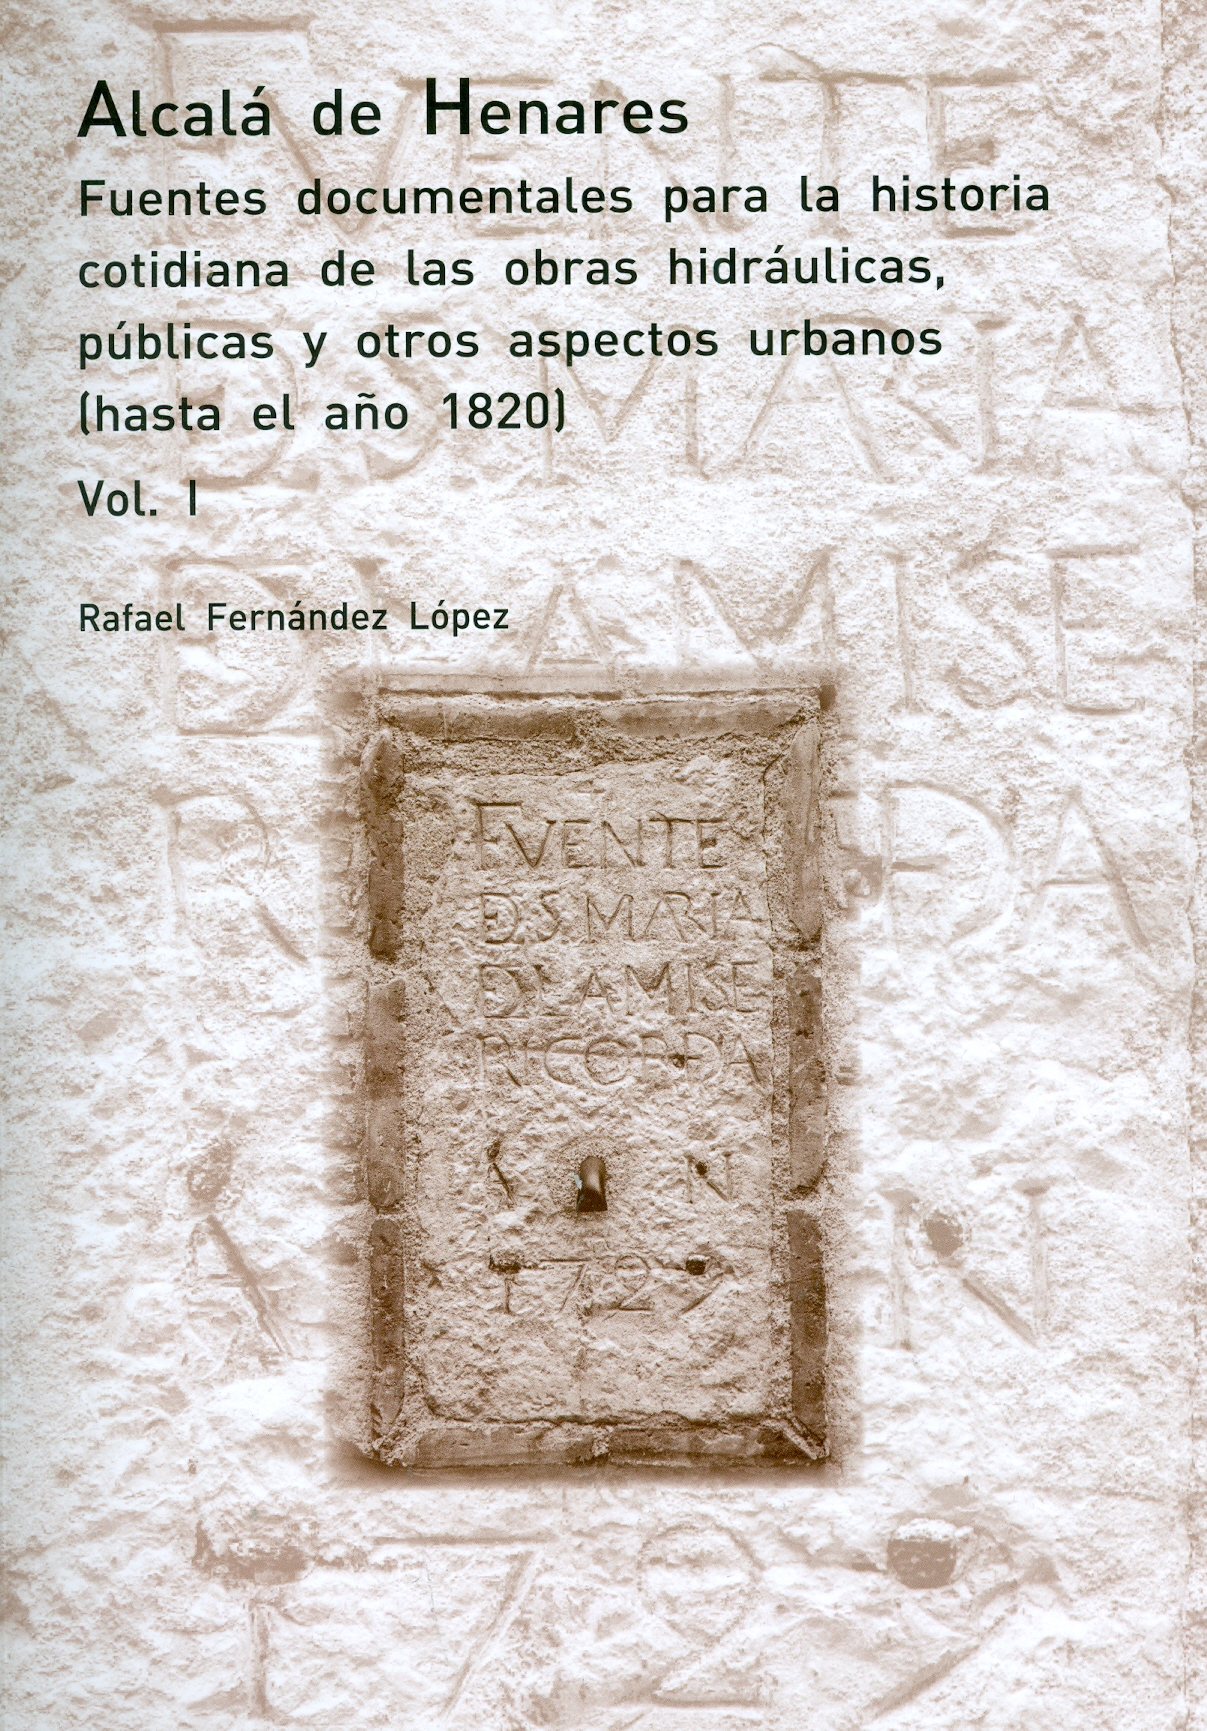 Imagen de portada del libro Alcalá de Henares